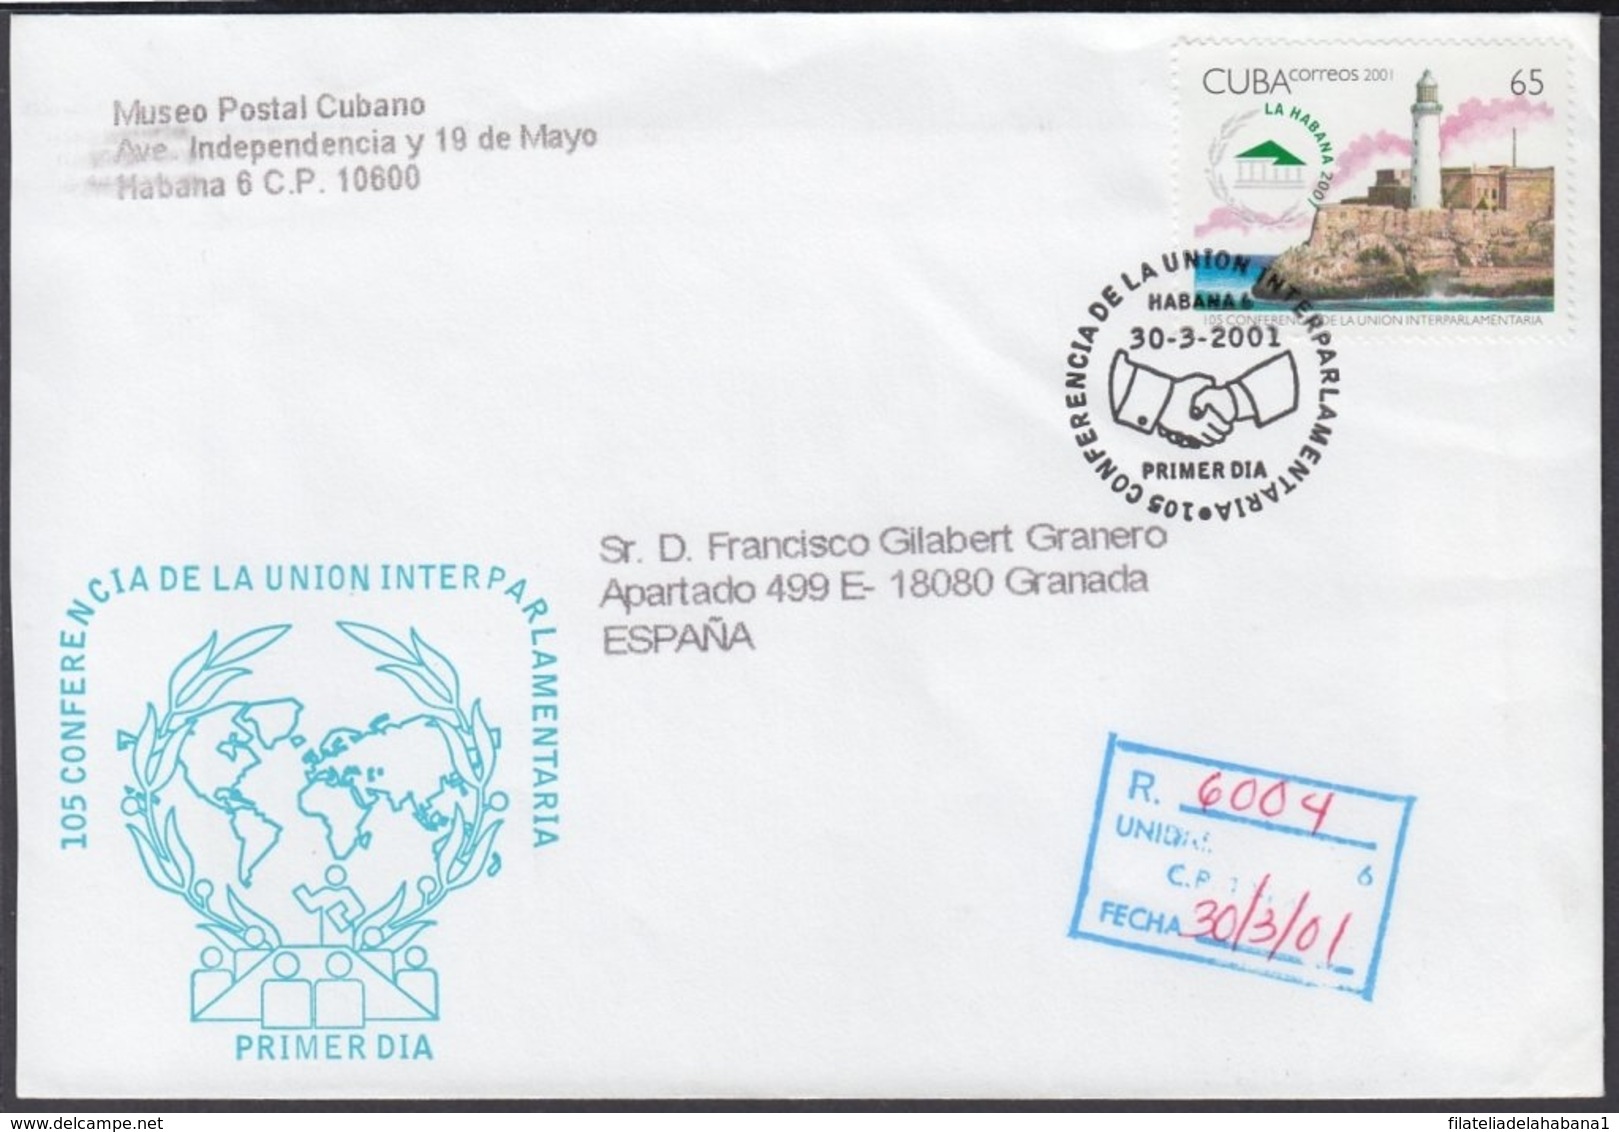 2001-FDC-45 CUBA FDC 2001. REGISTERED COVER TO SPAIN. III CONFERENCIA UNION PARLAMENTARIA, MORRO CASTLE. - FDC